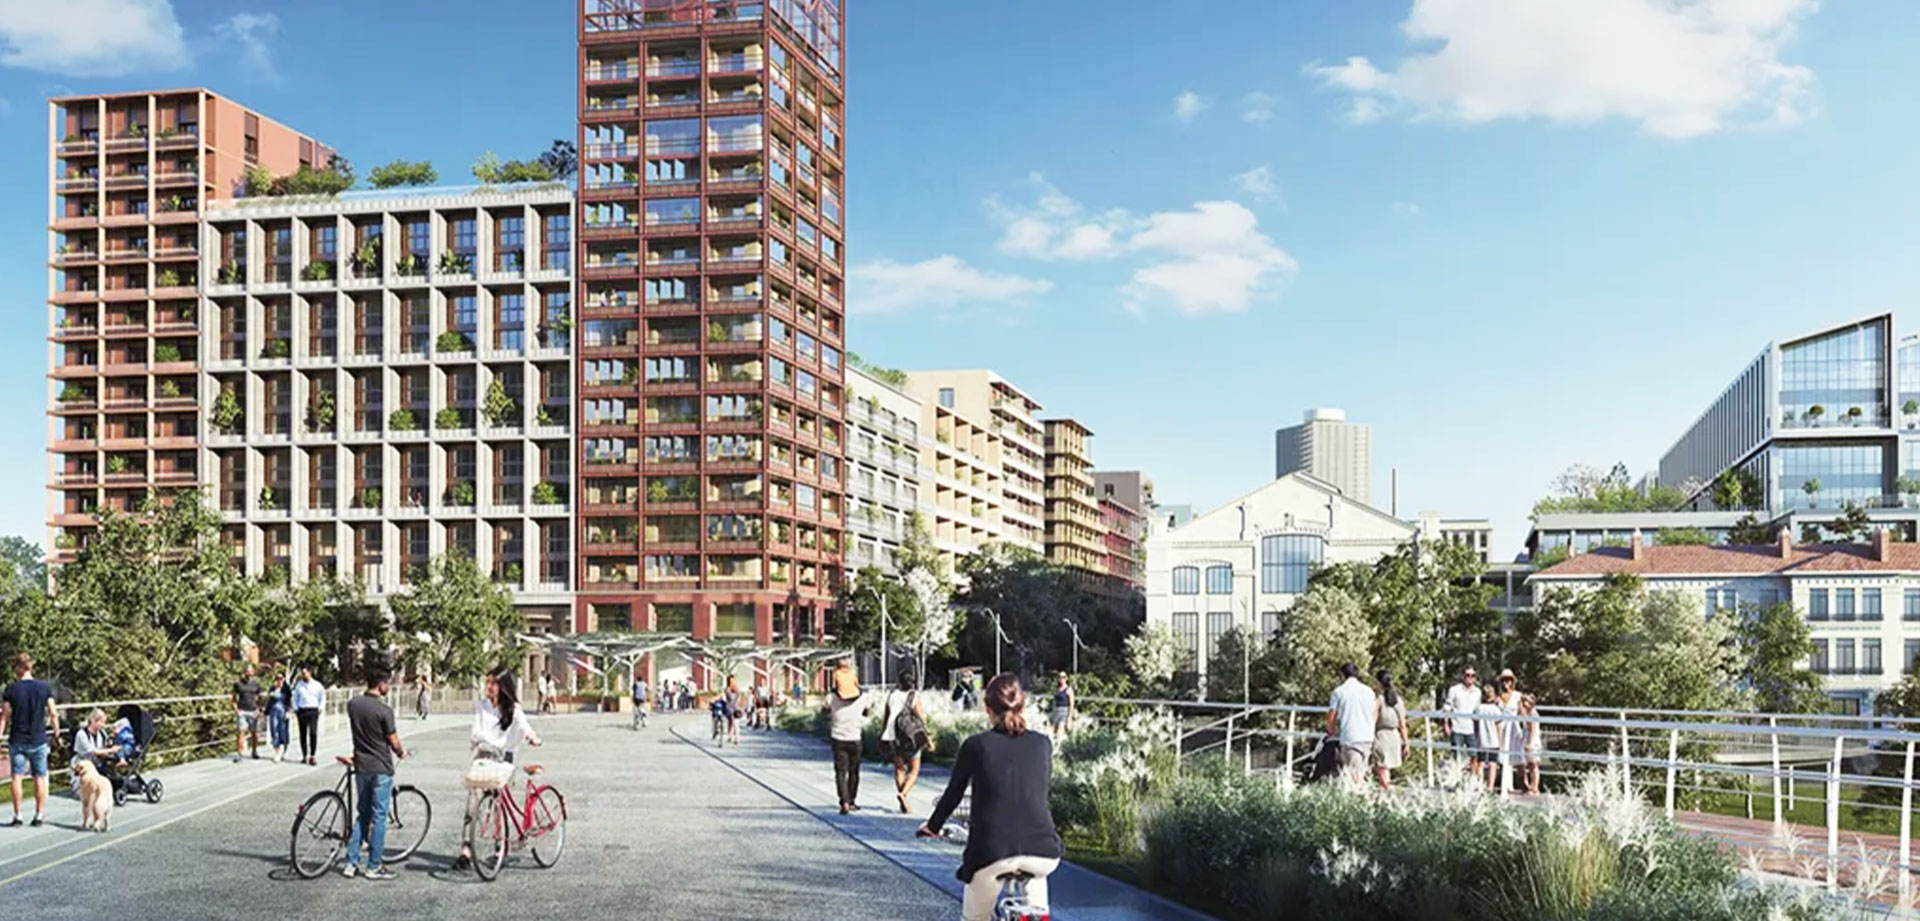 Arquitetura e engenharia: conheça a Vila Olímpica de Paris 2024